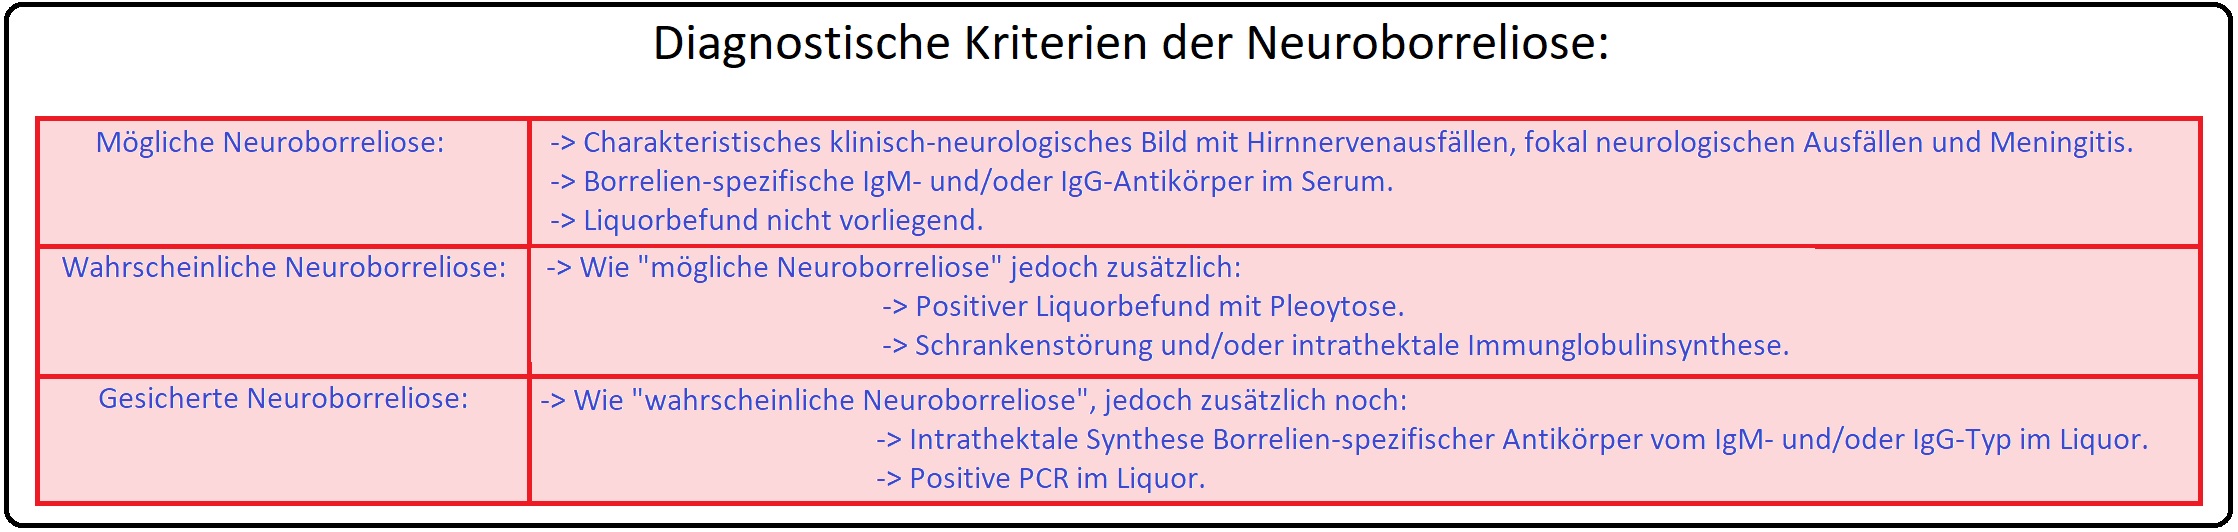 010 Diagnostische Kriterien der Neuroborreliose